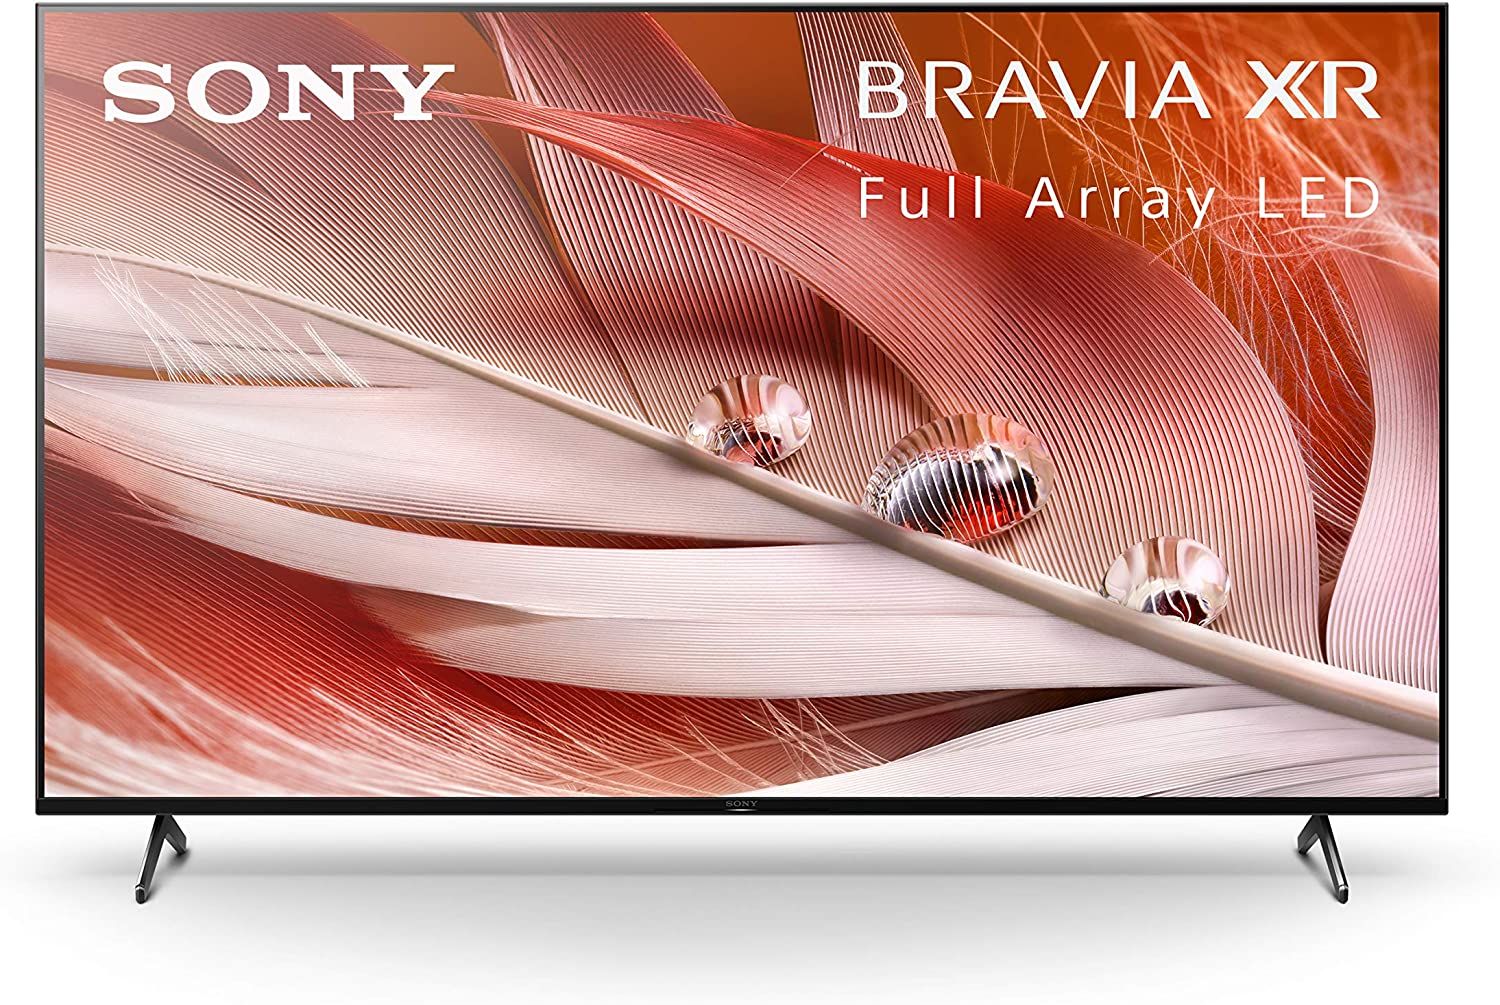 Promo image of the Sony X90J Bravia XR 4K TV.